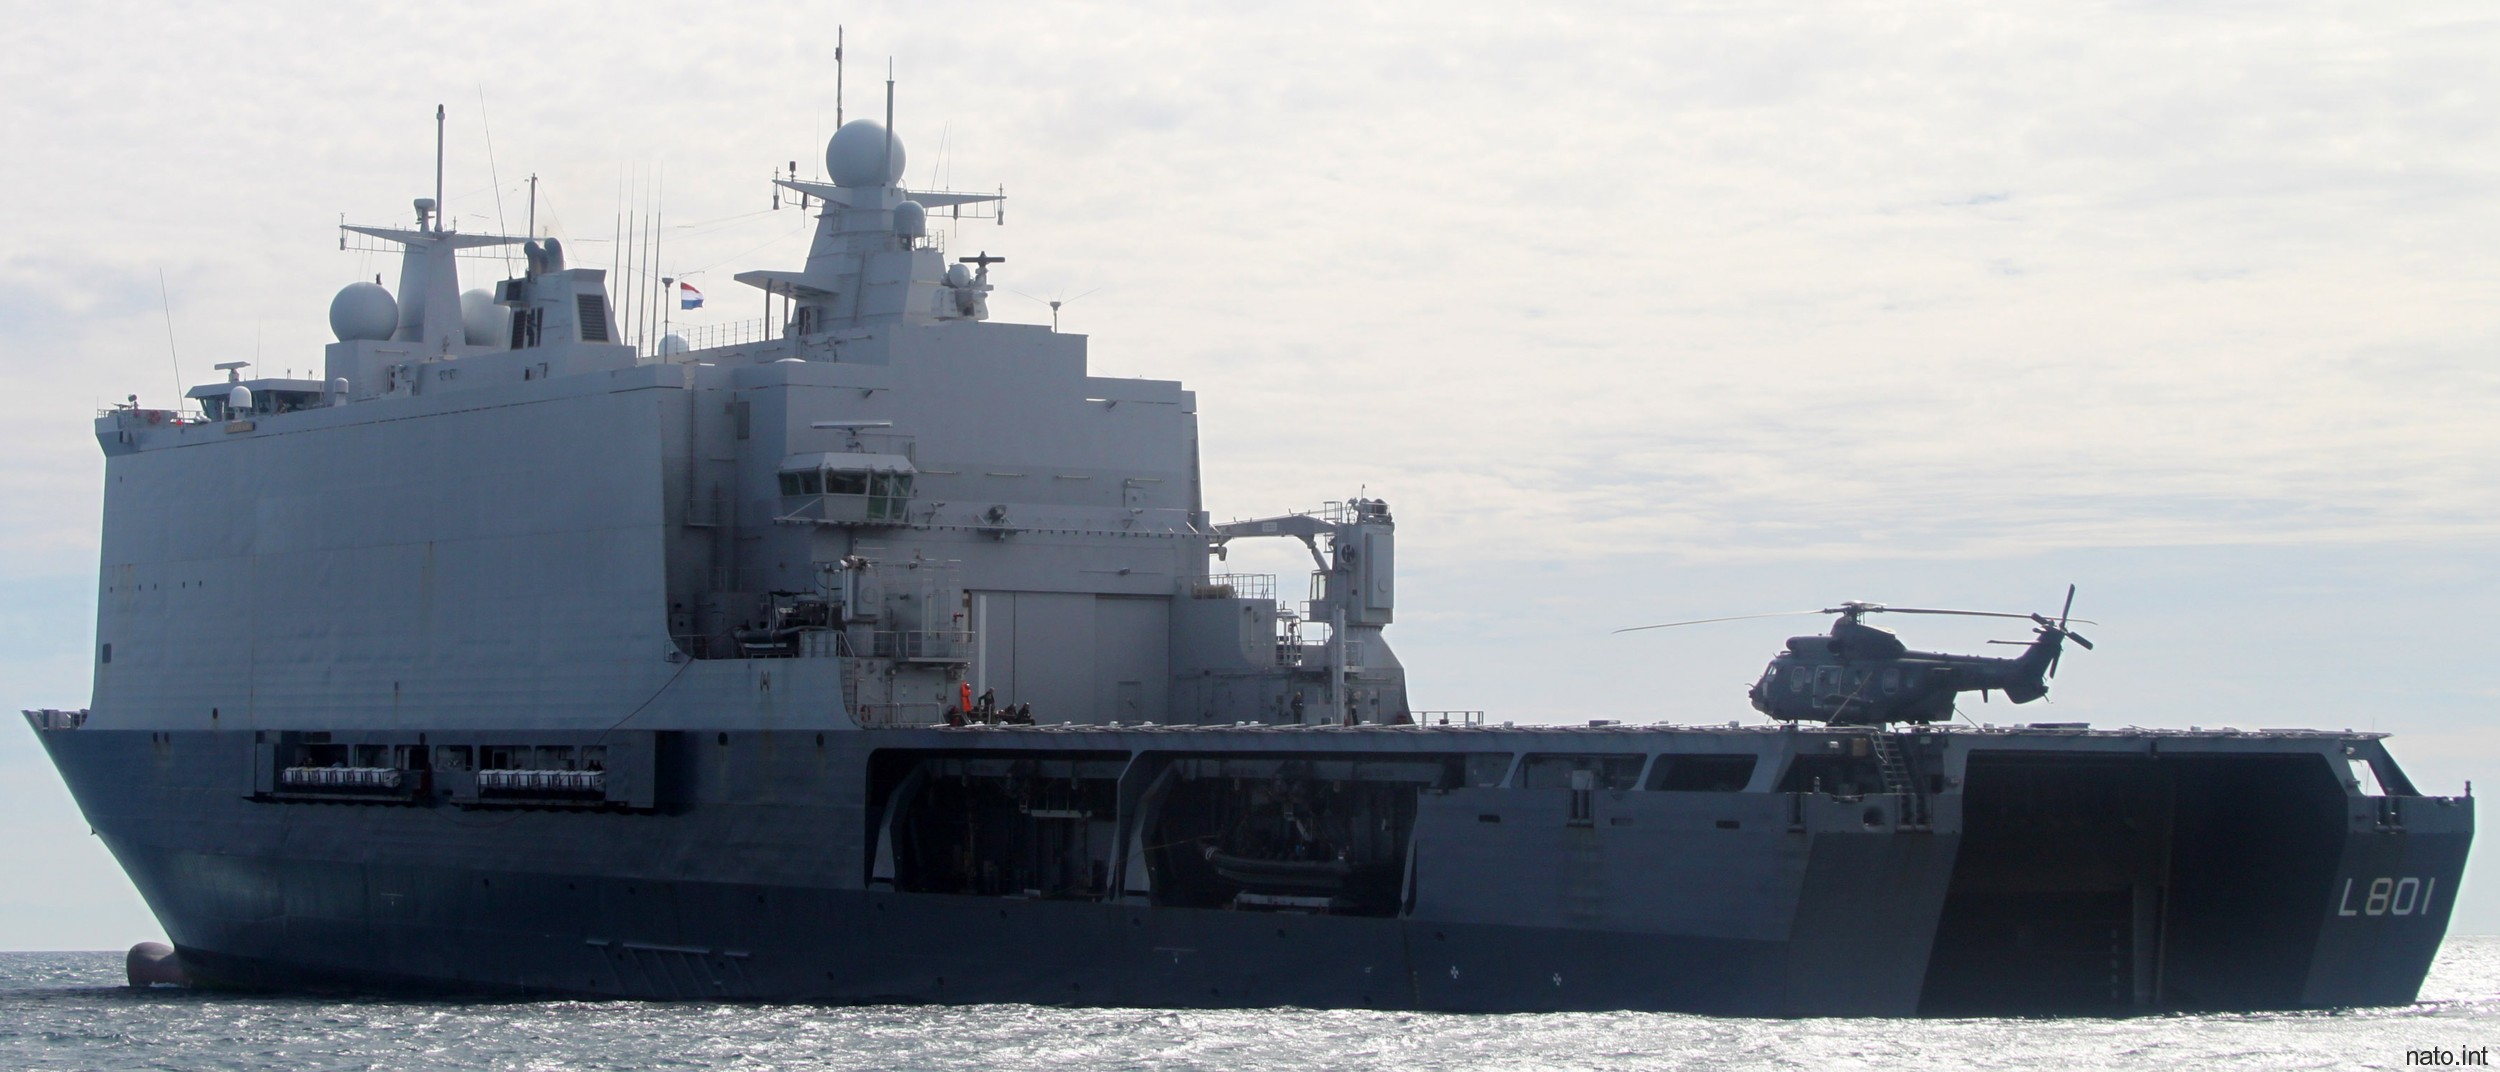 l-801 hnlms johan de witt amphibious ship landing platform dock lpd royal netherlands navy 27